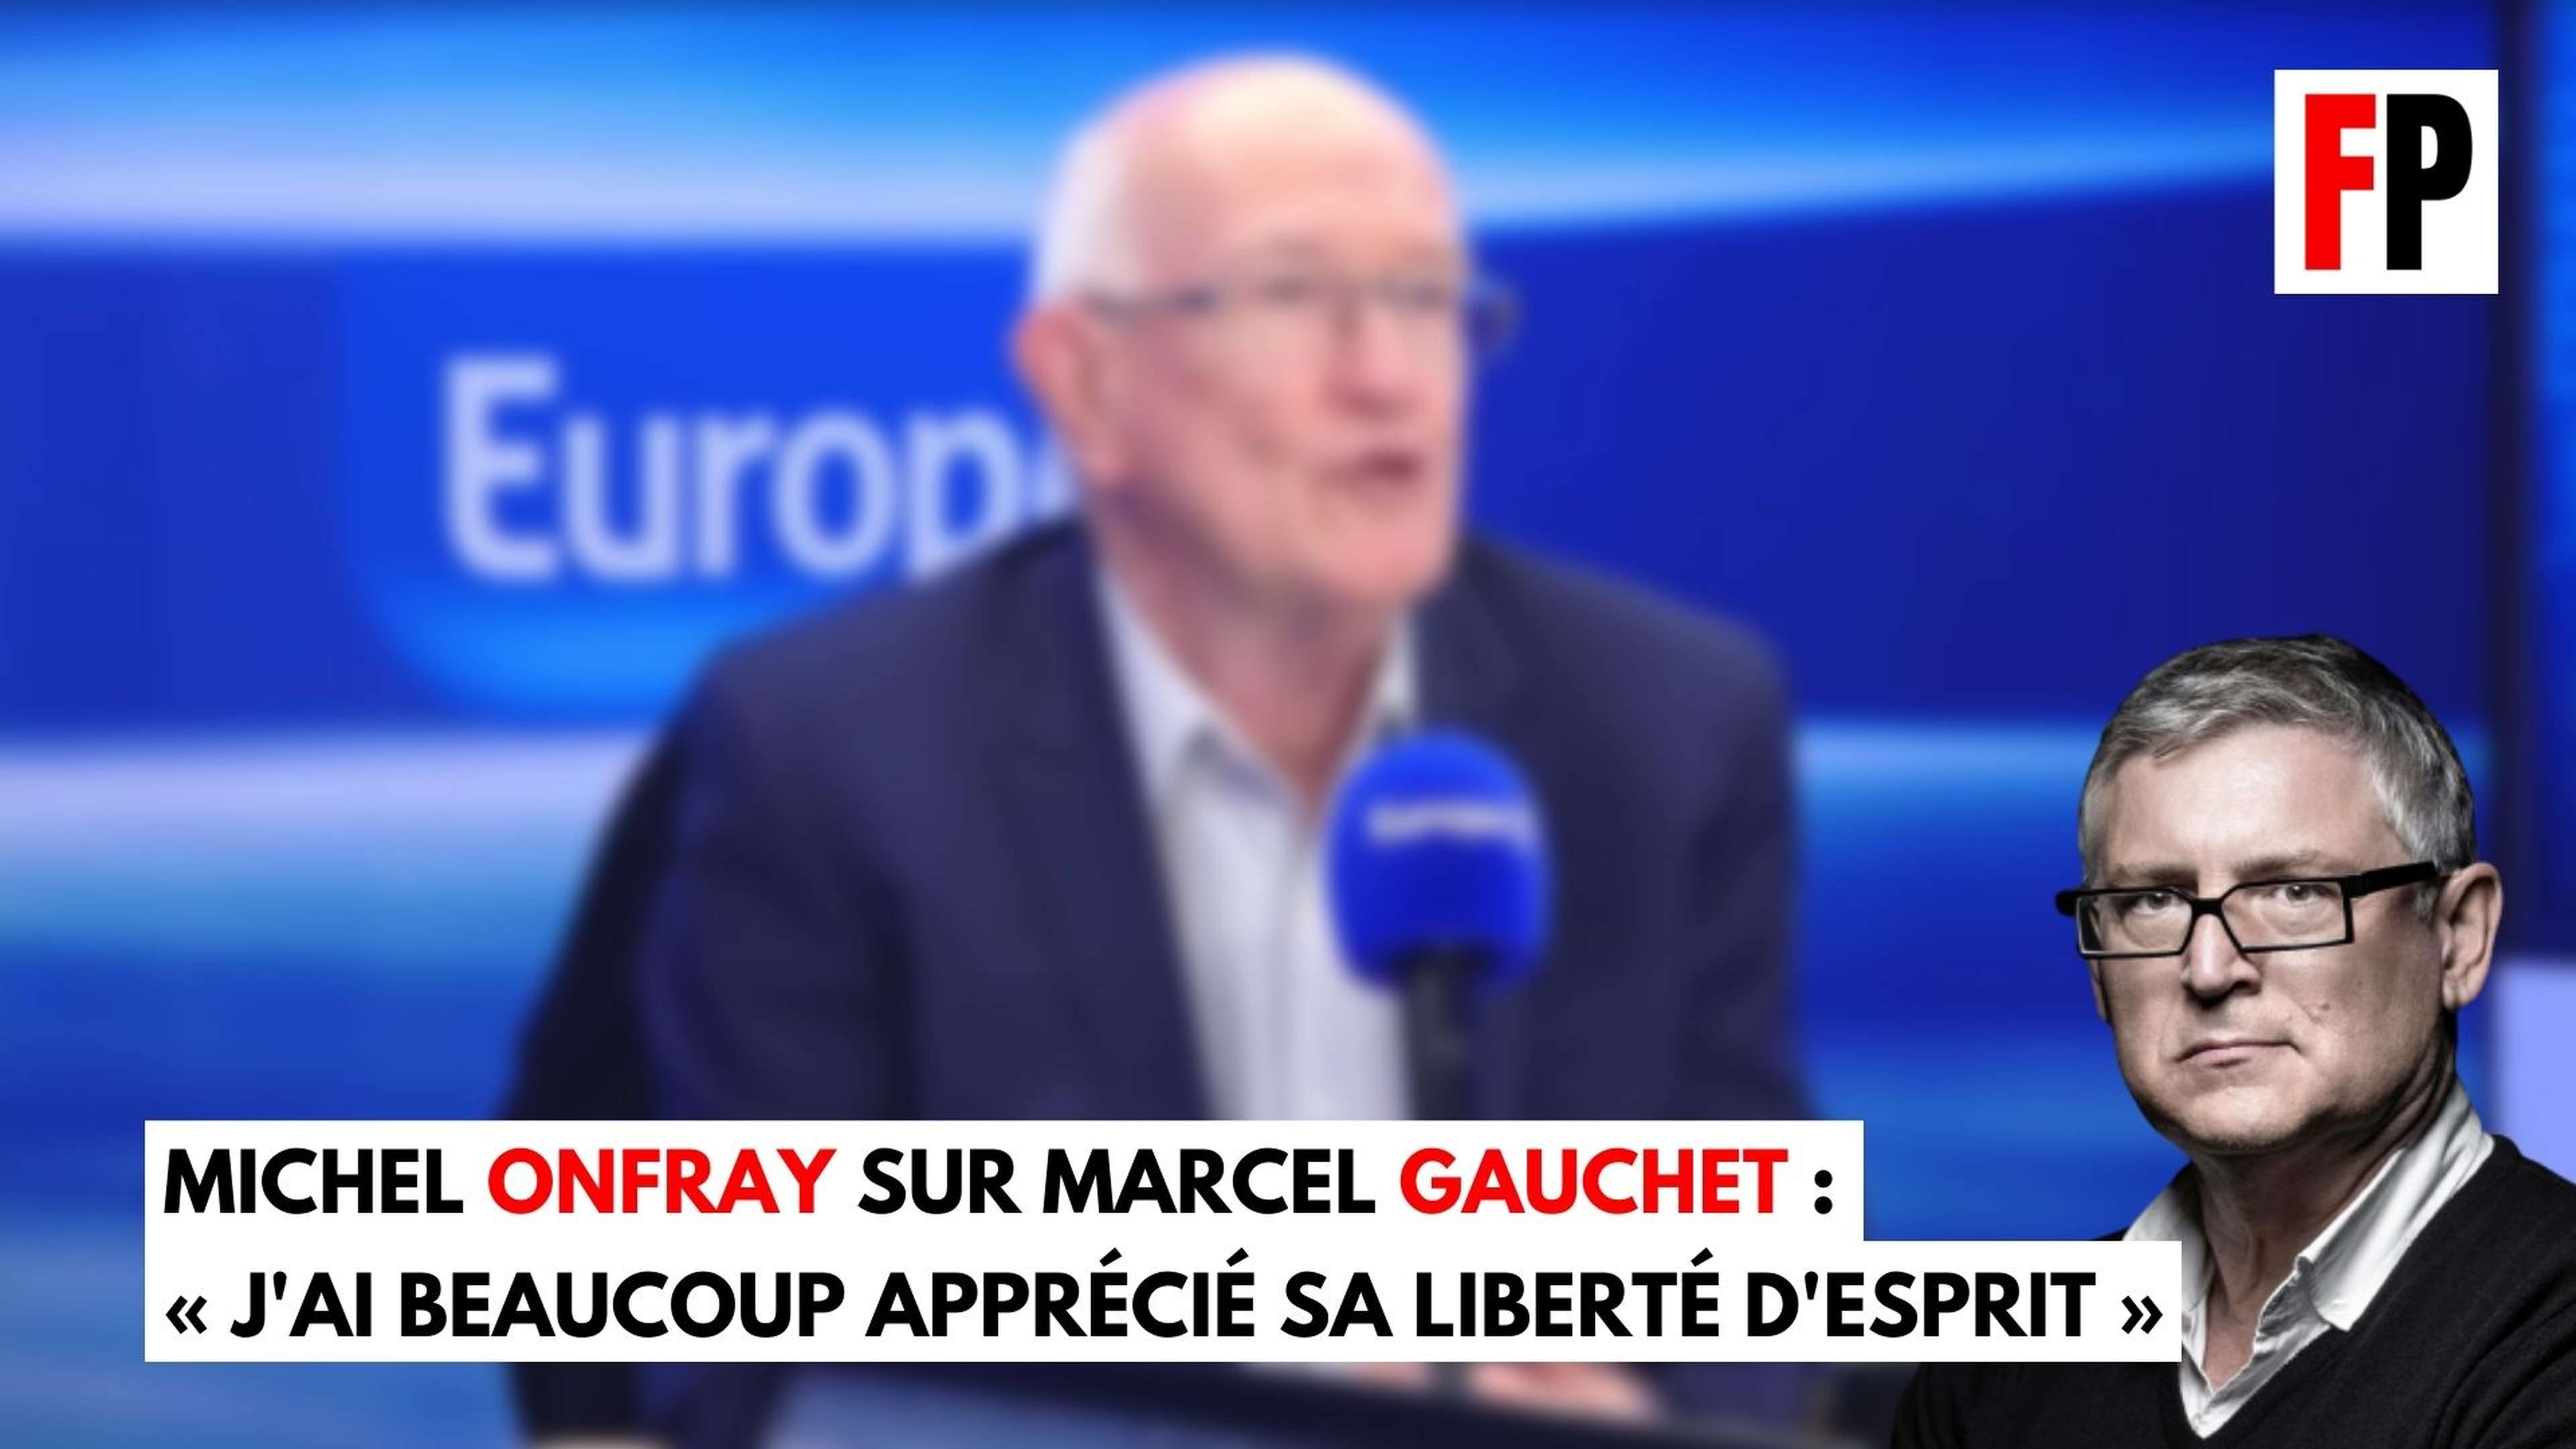 Michel Onfray sur Marcel Gauchet : « J'ai beaucoup apprécié sa liberté d'esprit »